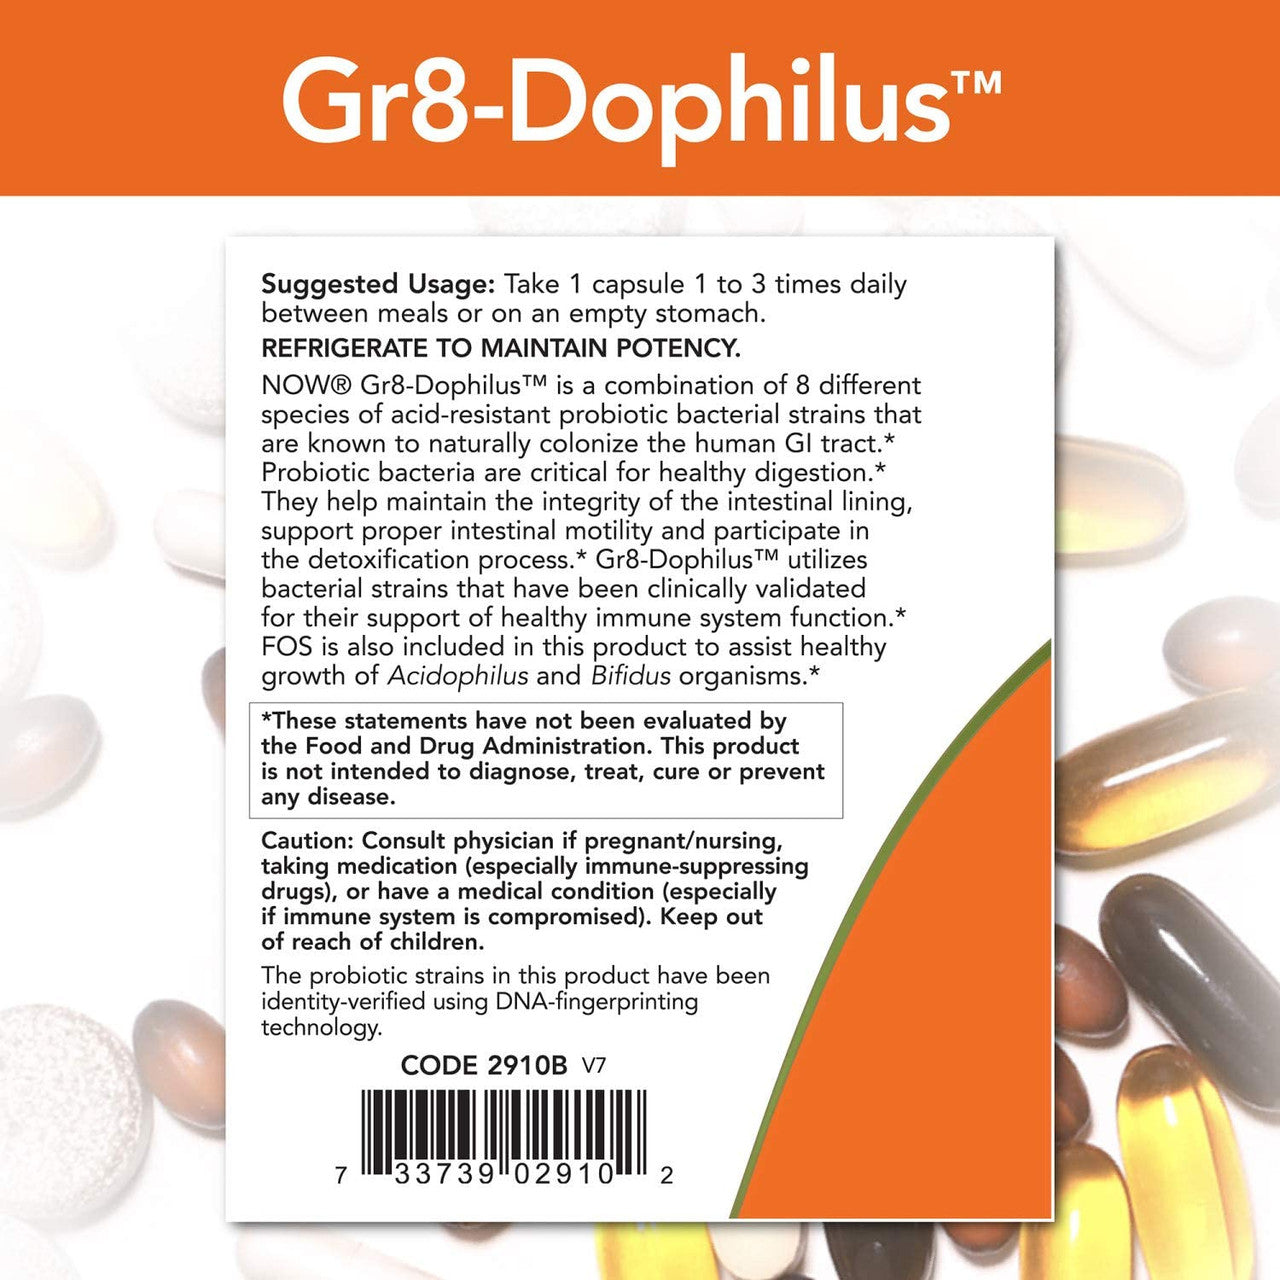 Now Gr8-Dophilus directions